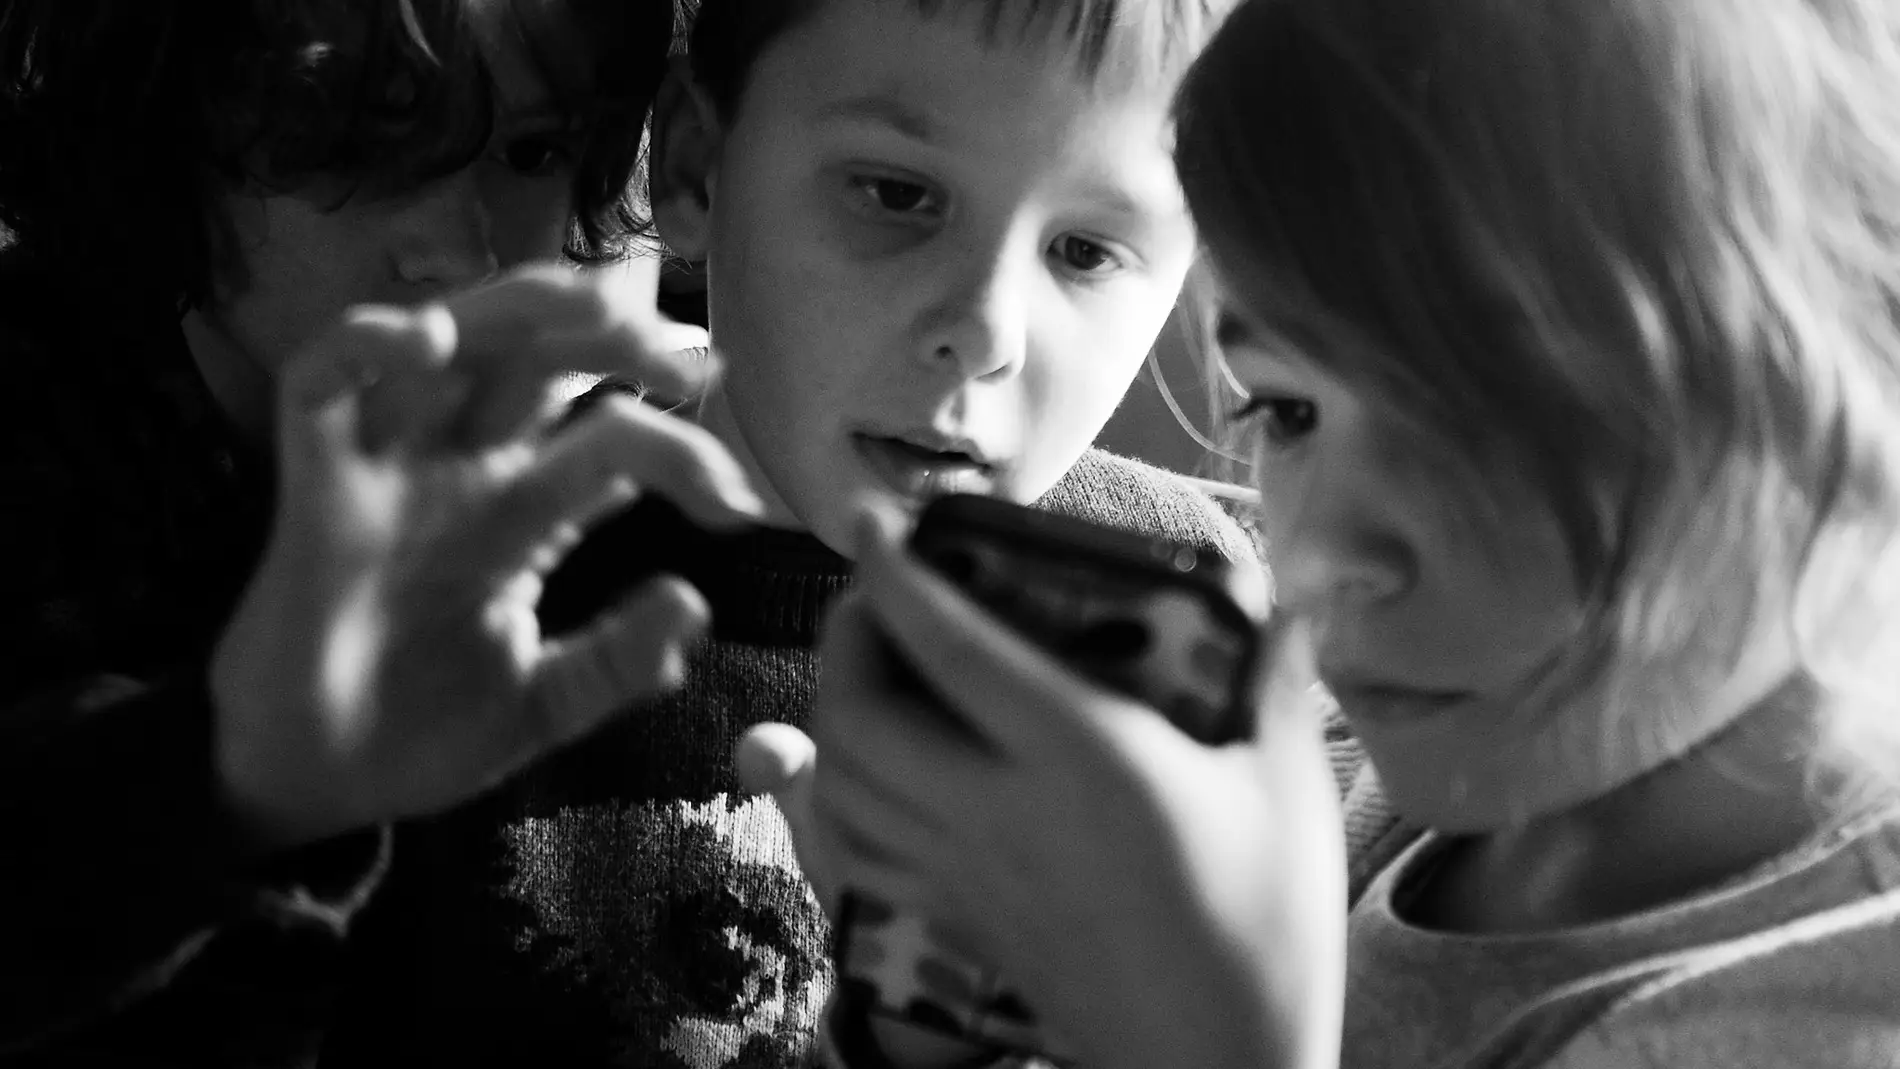 Niños con smartphones